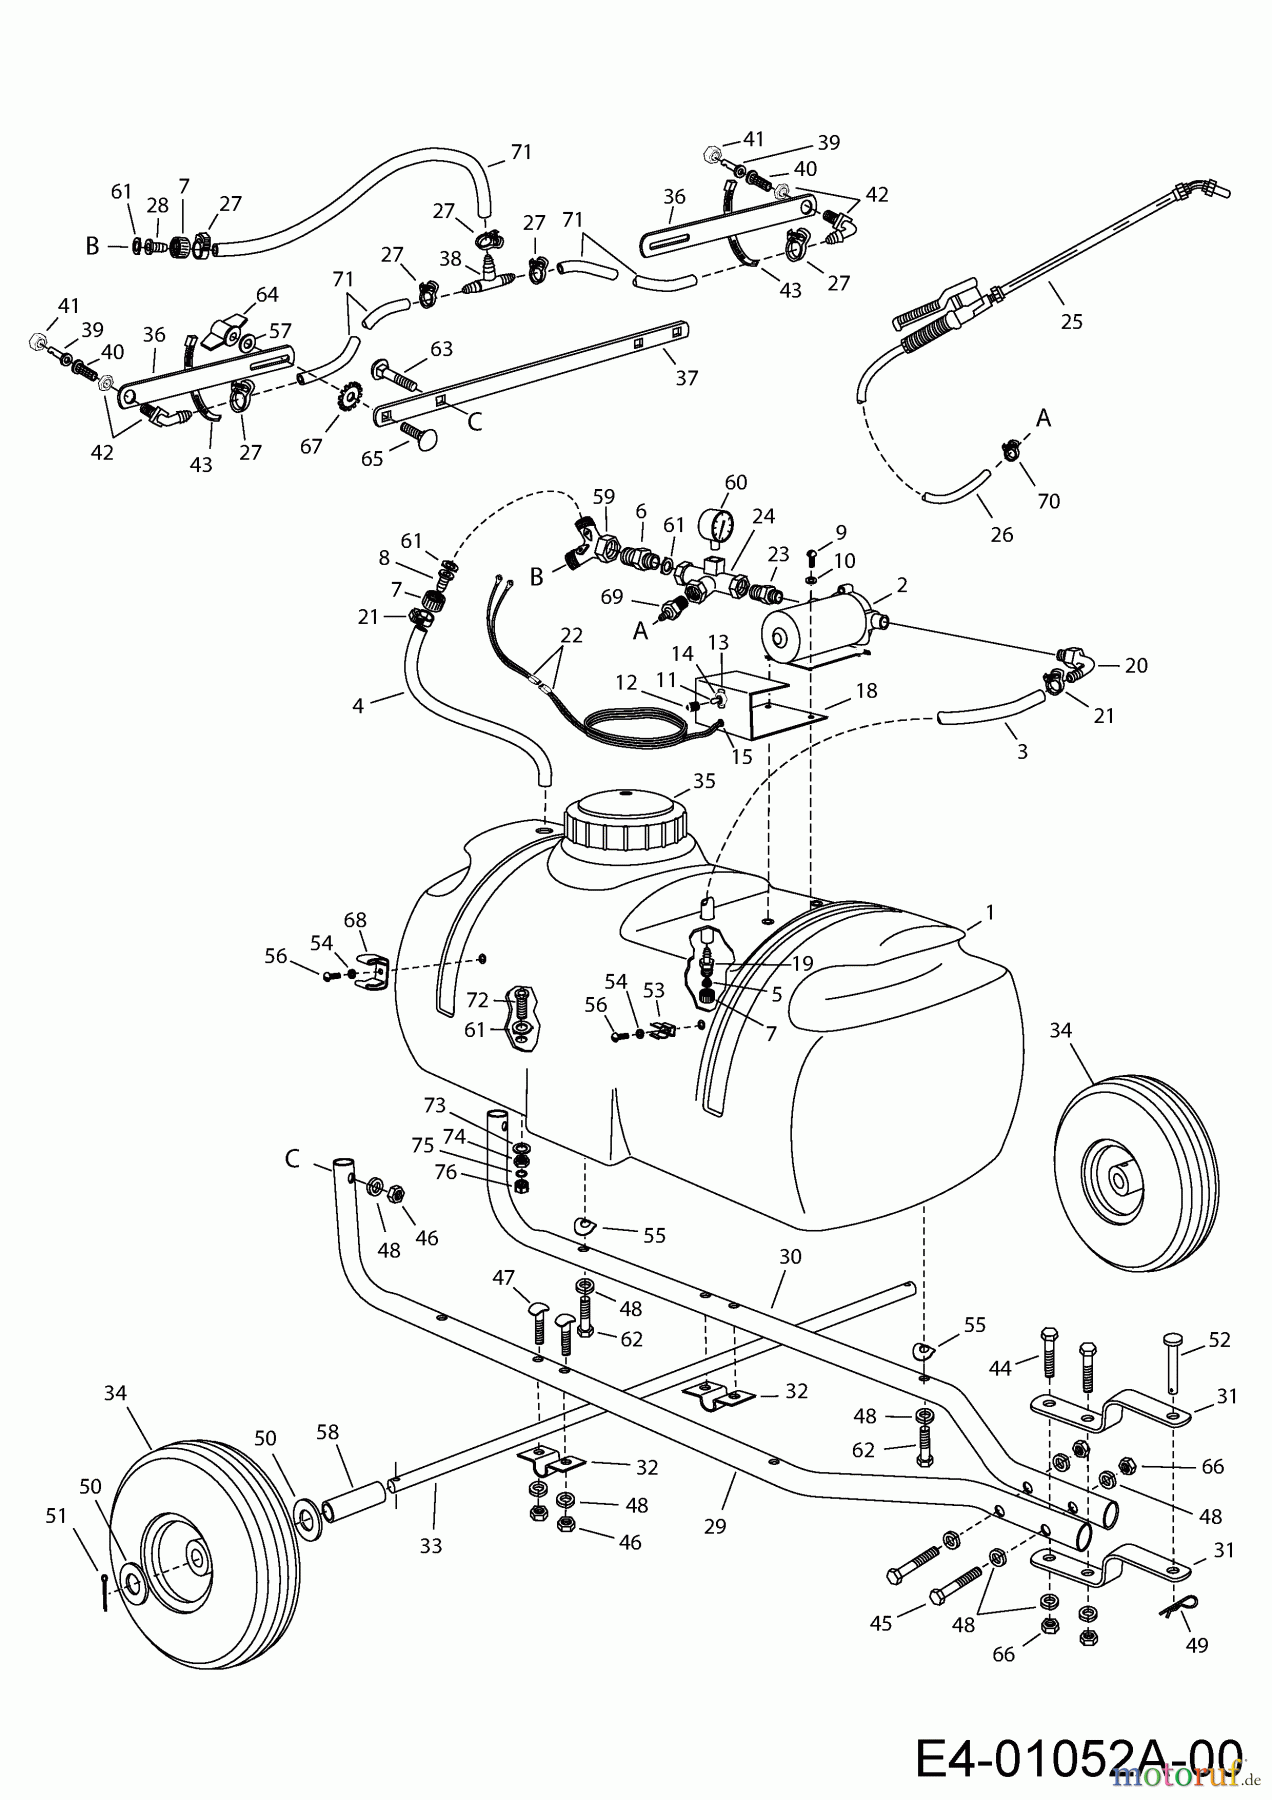  MTD Accessories Accessories garden and lawn tractors Sprayer 45-0293  (190-537-000) 190-537-000  (2001) Basic machine